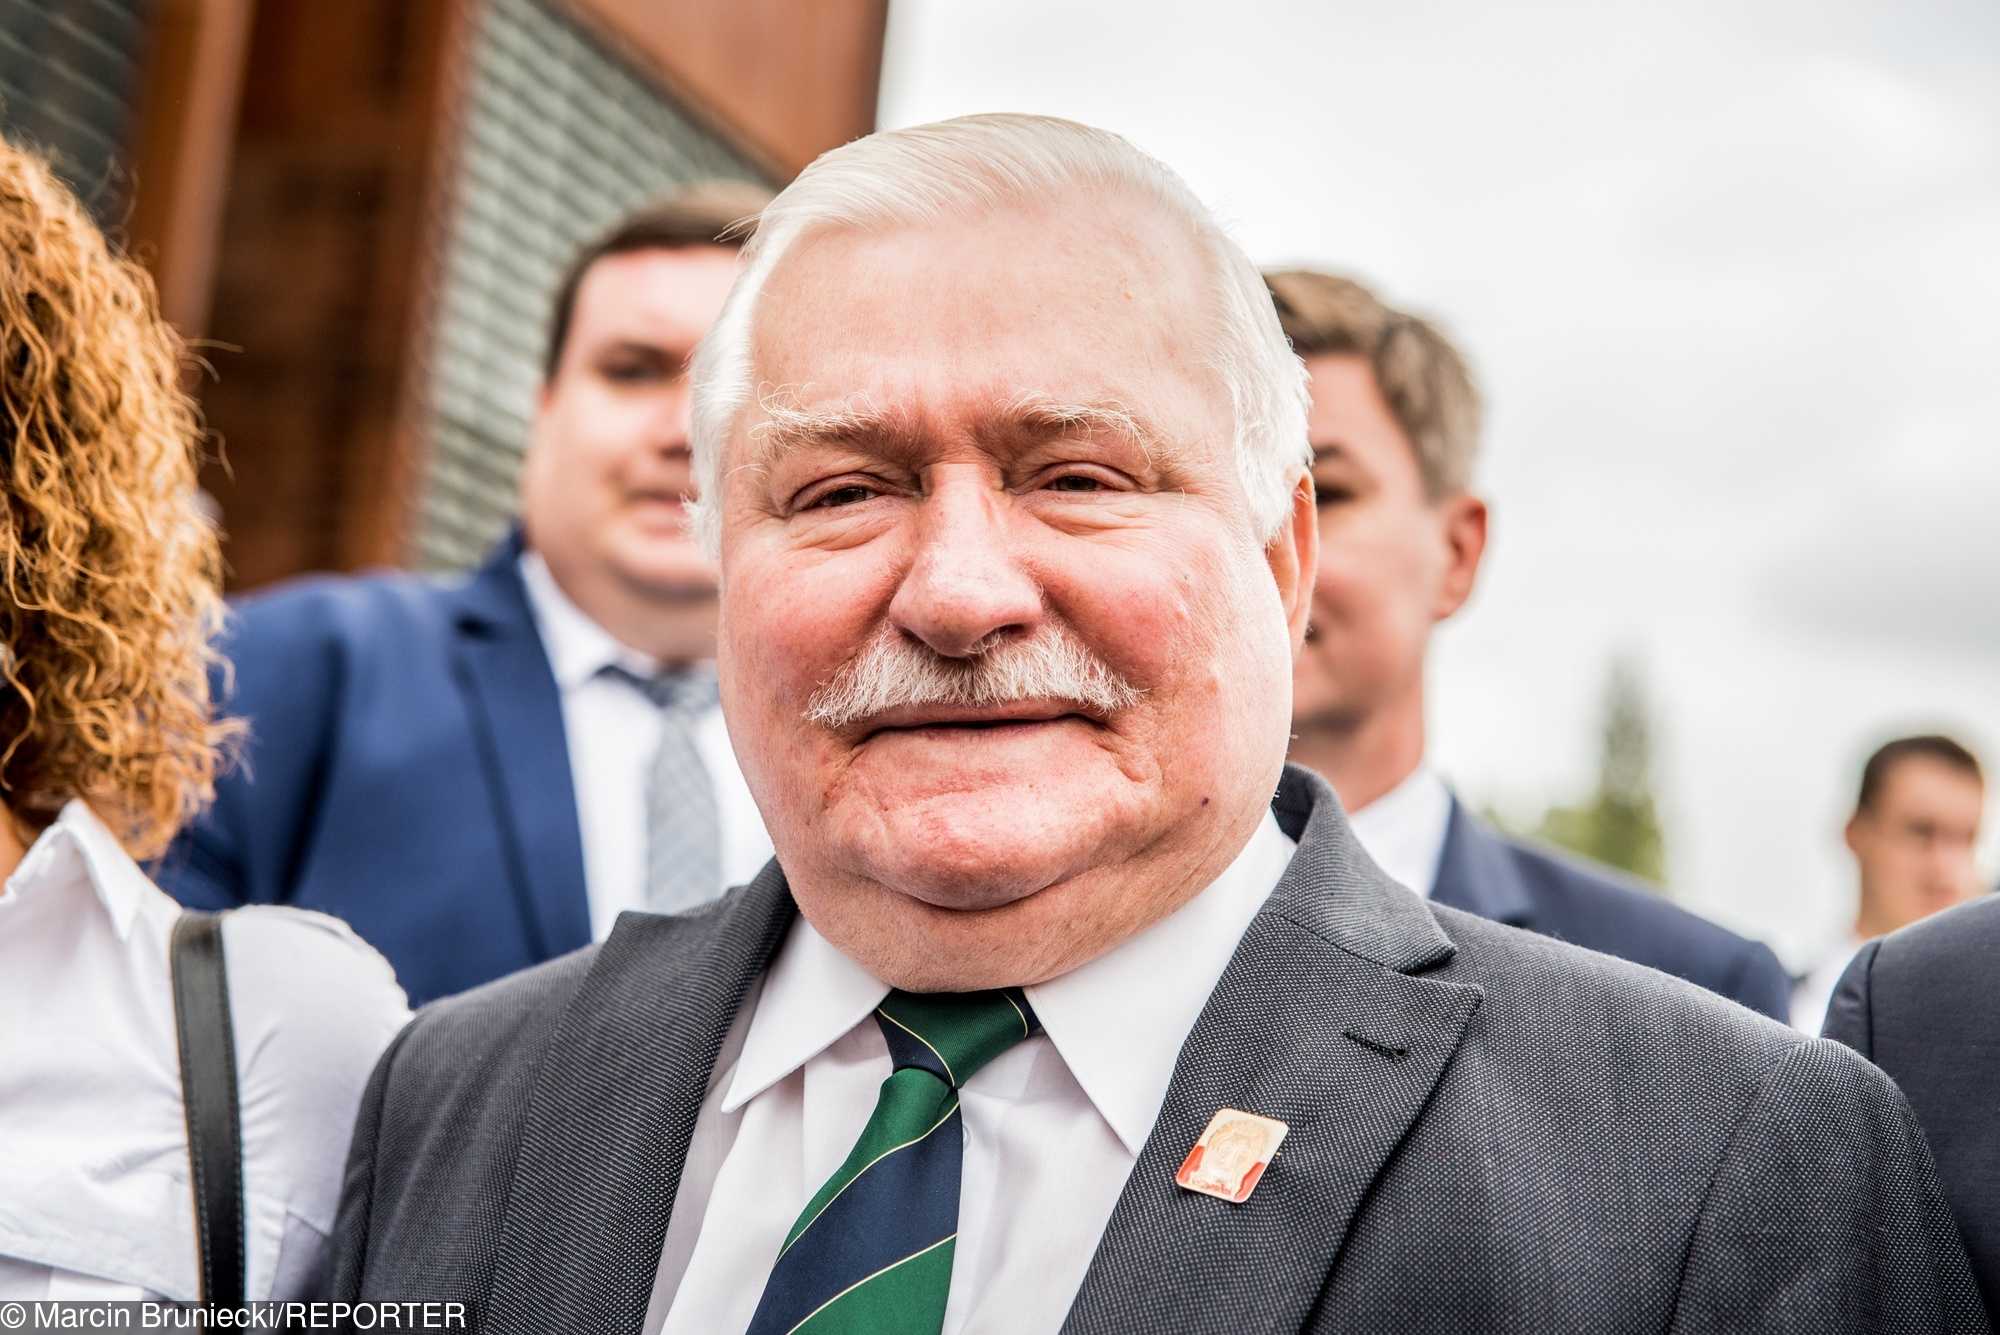 Wałęsa w FURII po słowach premiera! "Pan mnie obraził"